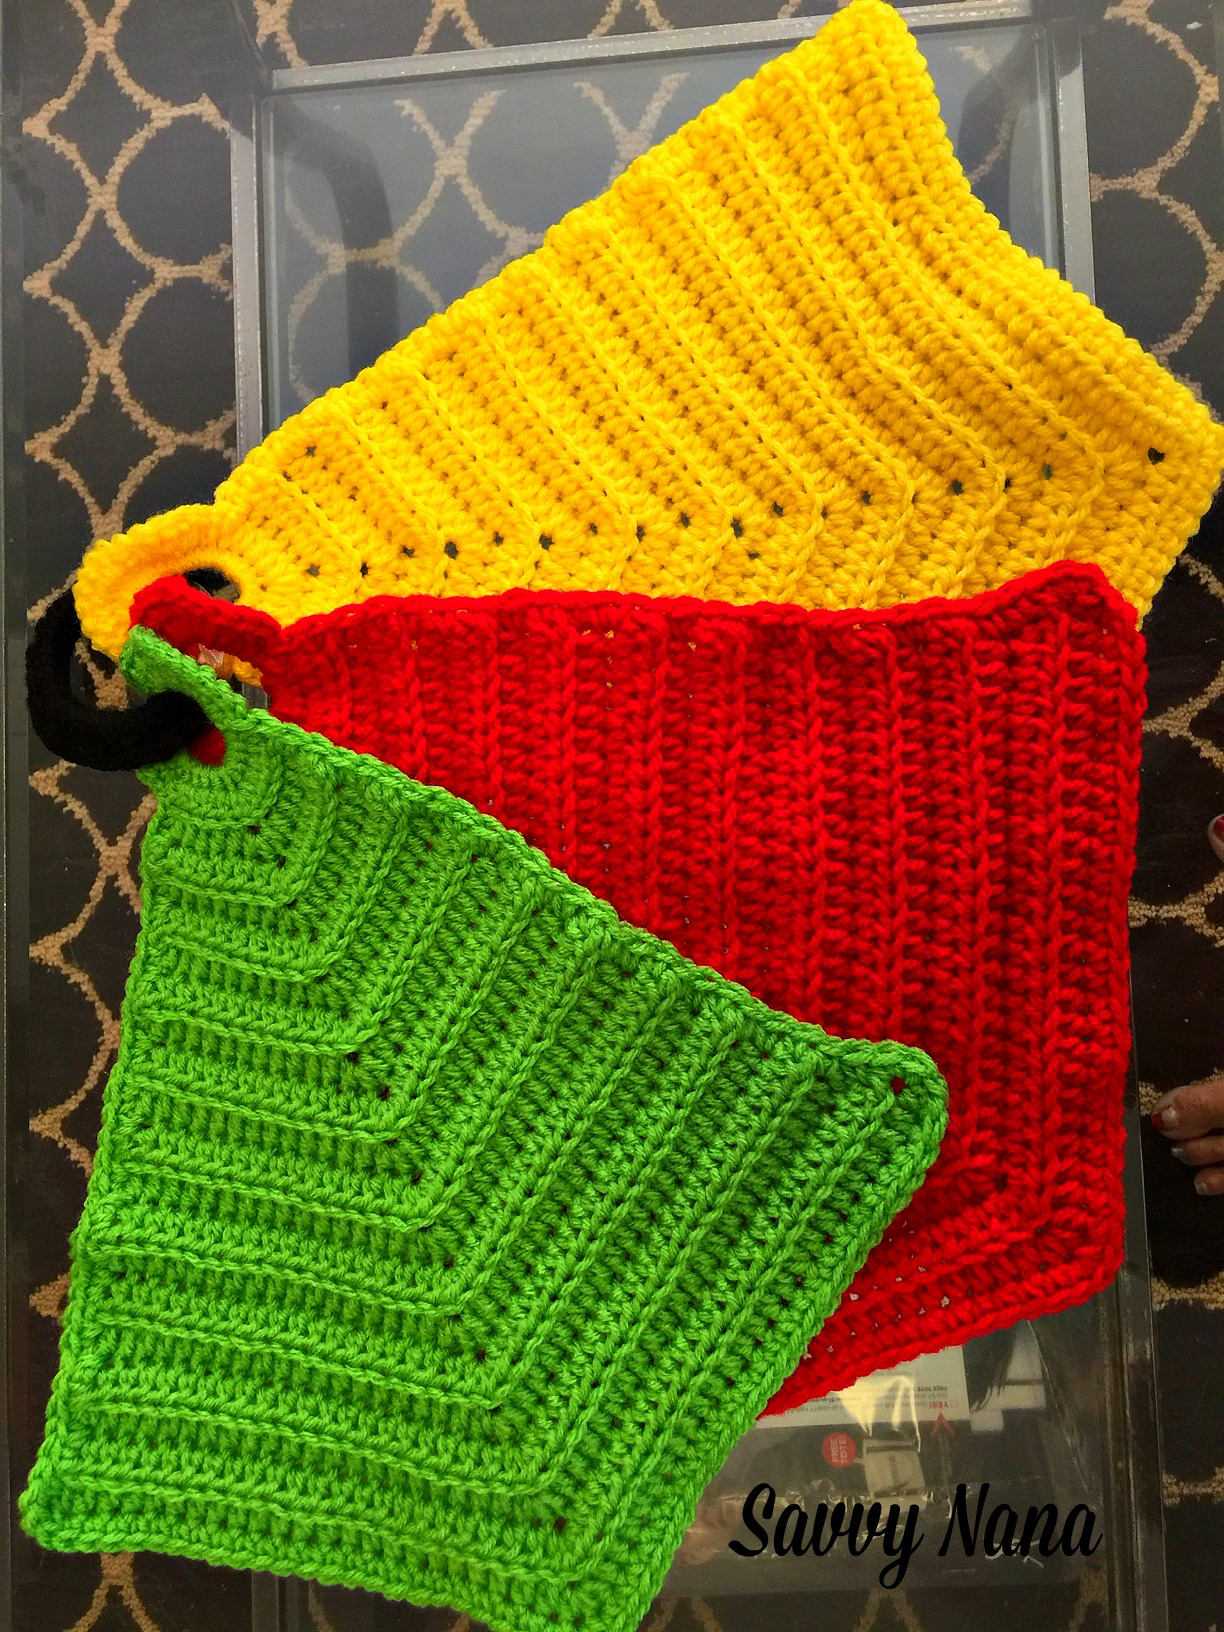 Free Crochet Hot Pad Patterns Crocheted Kitchen Hot Pads Free Crochet Pattern Savvy Nana